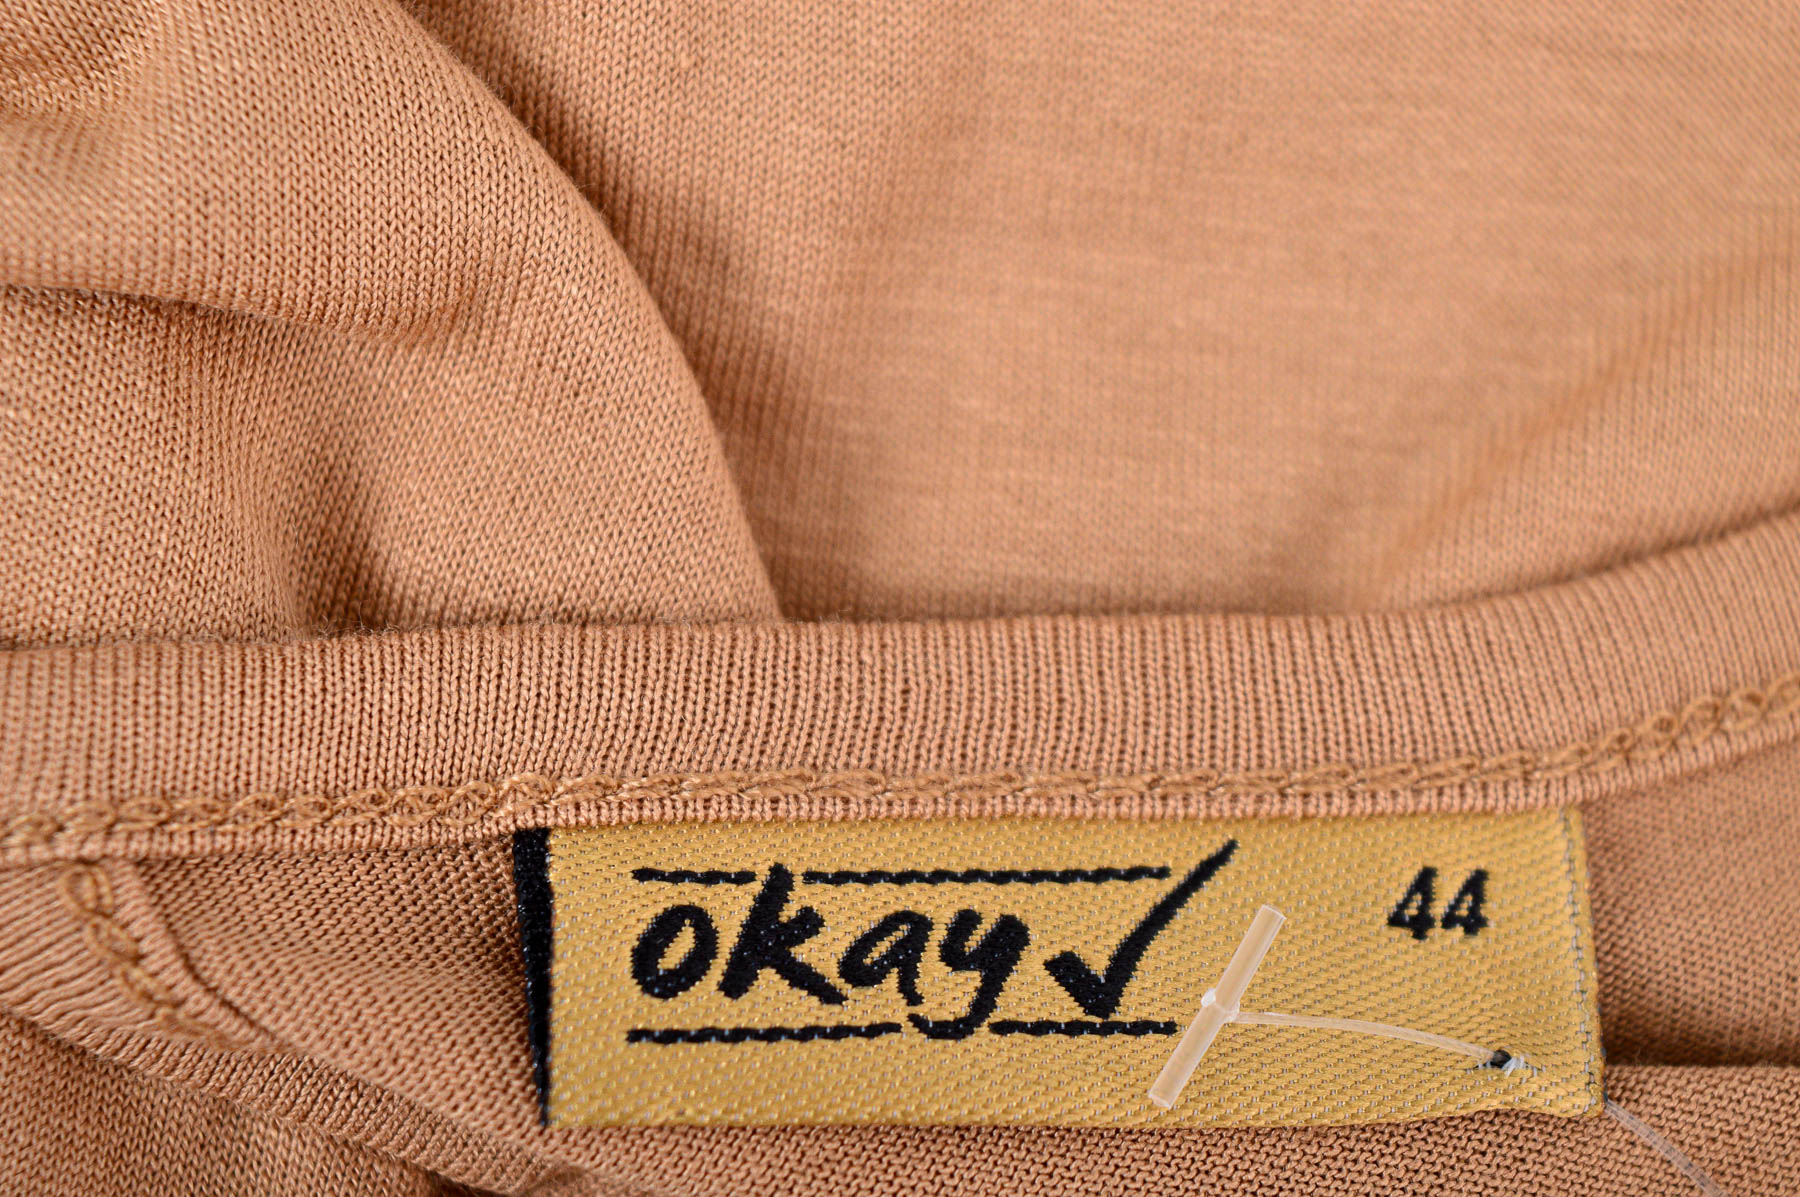 Дамска тениска - Okay - 2